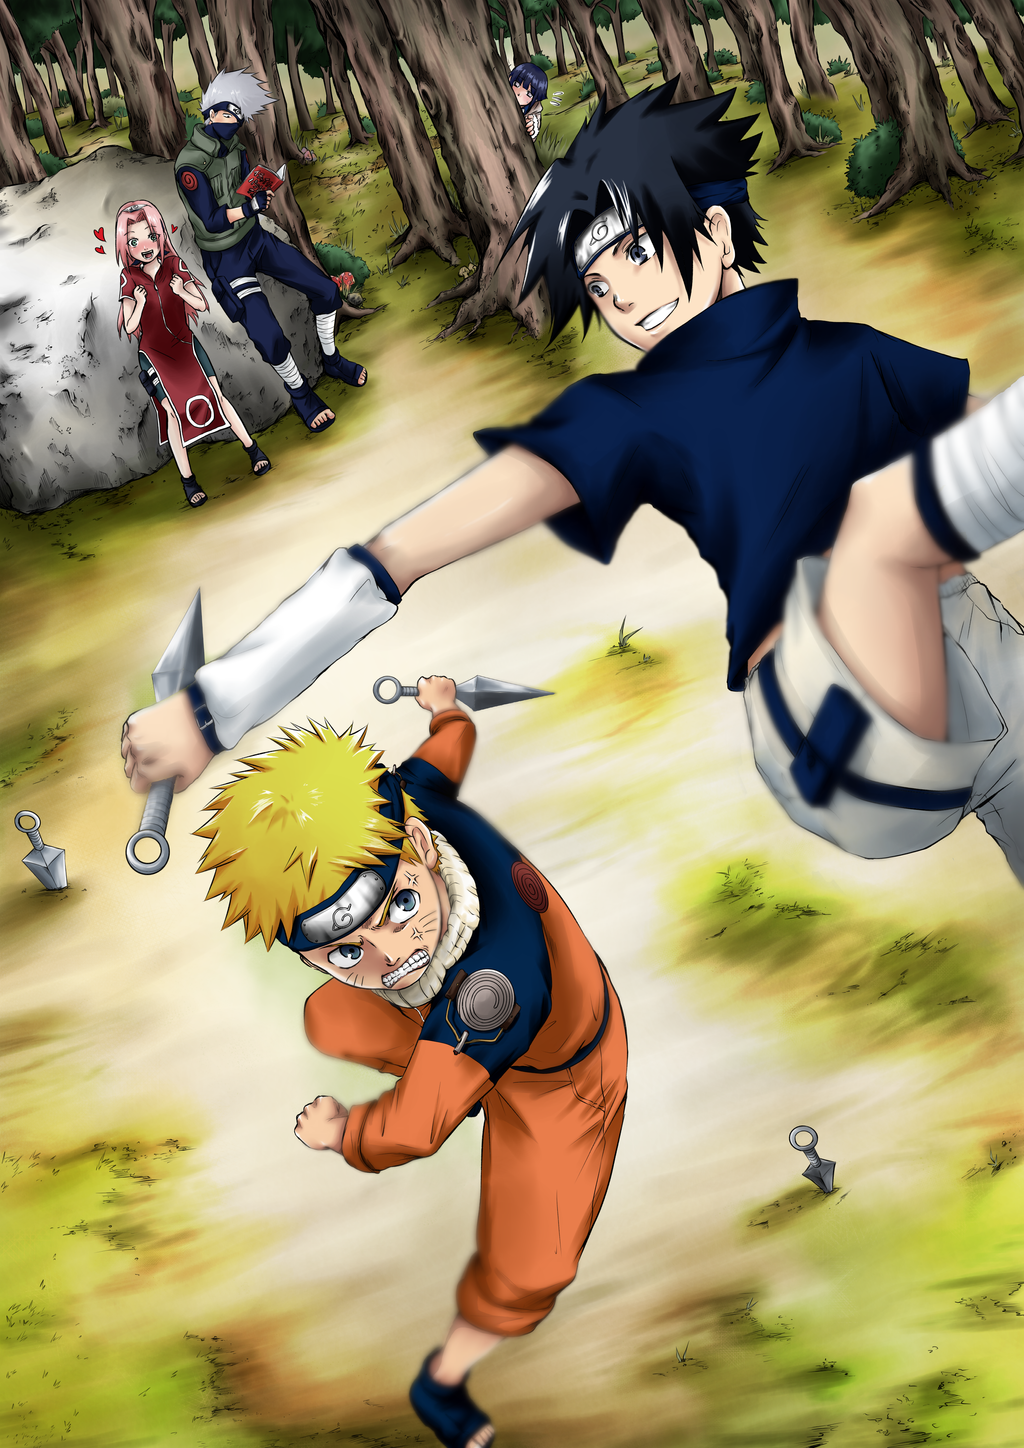 Naruto vs Sasuke by torosaamon on DeviantArt